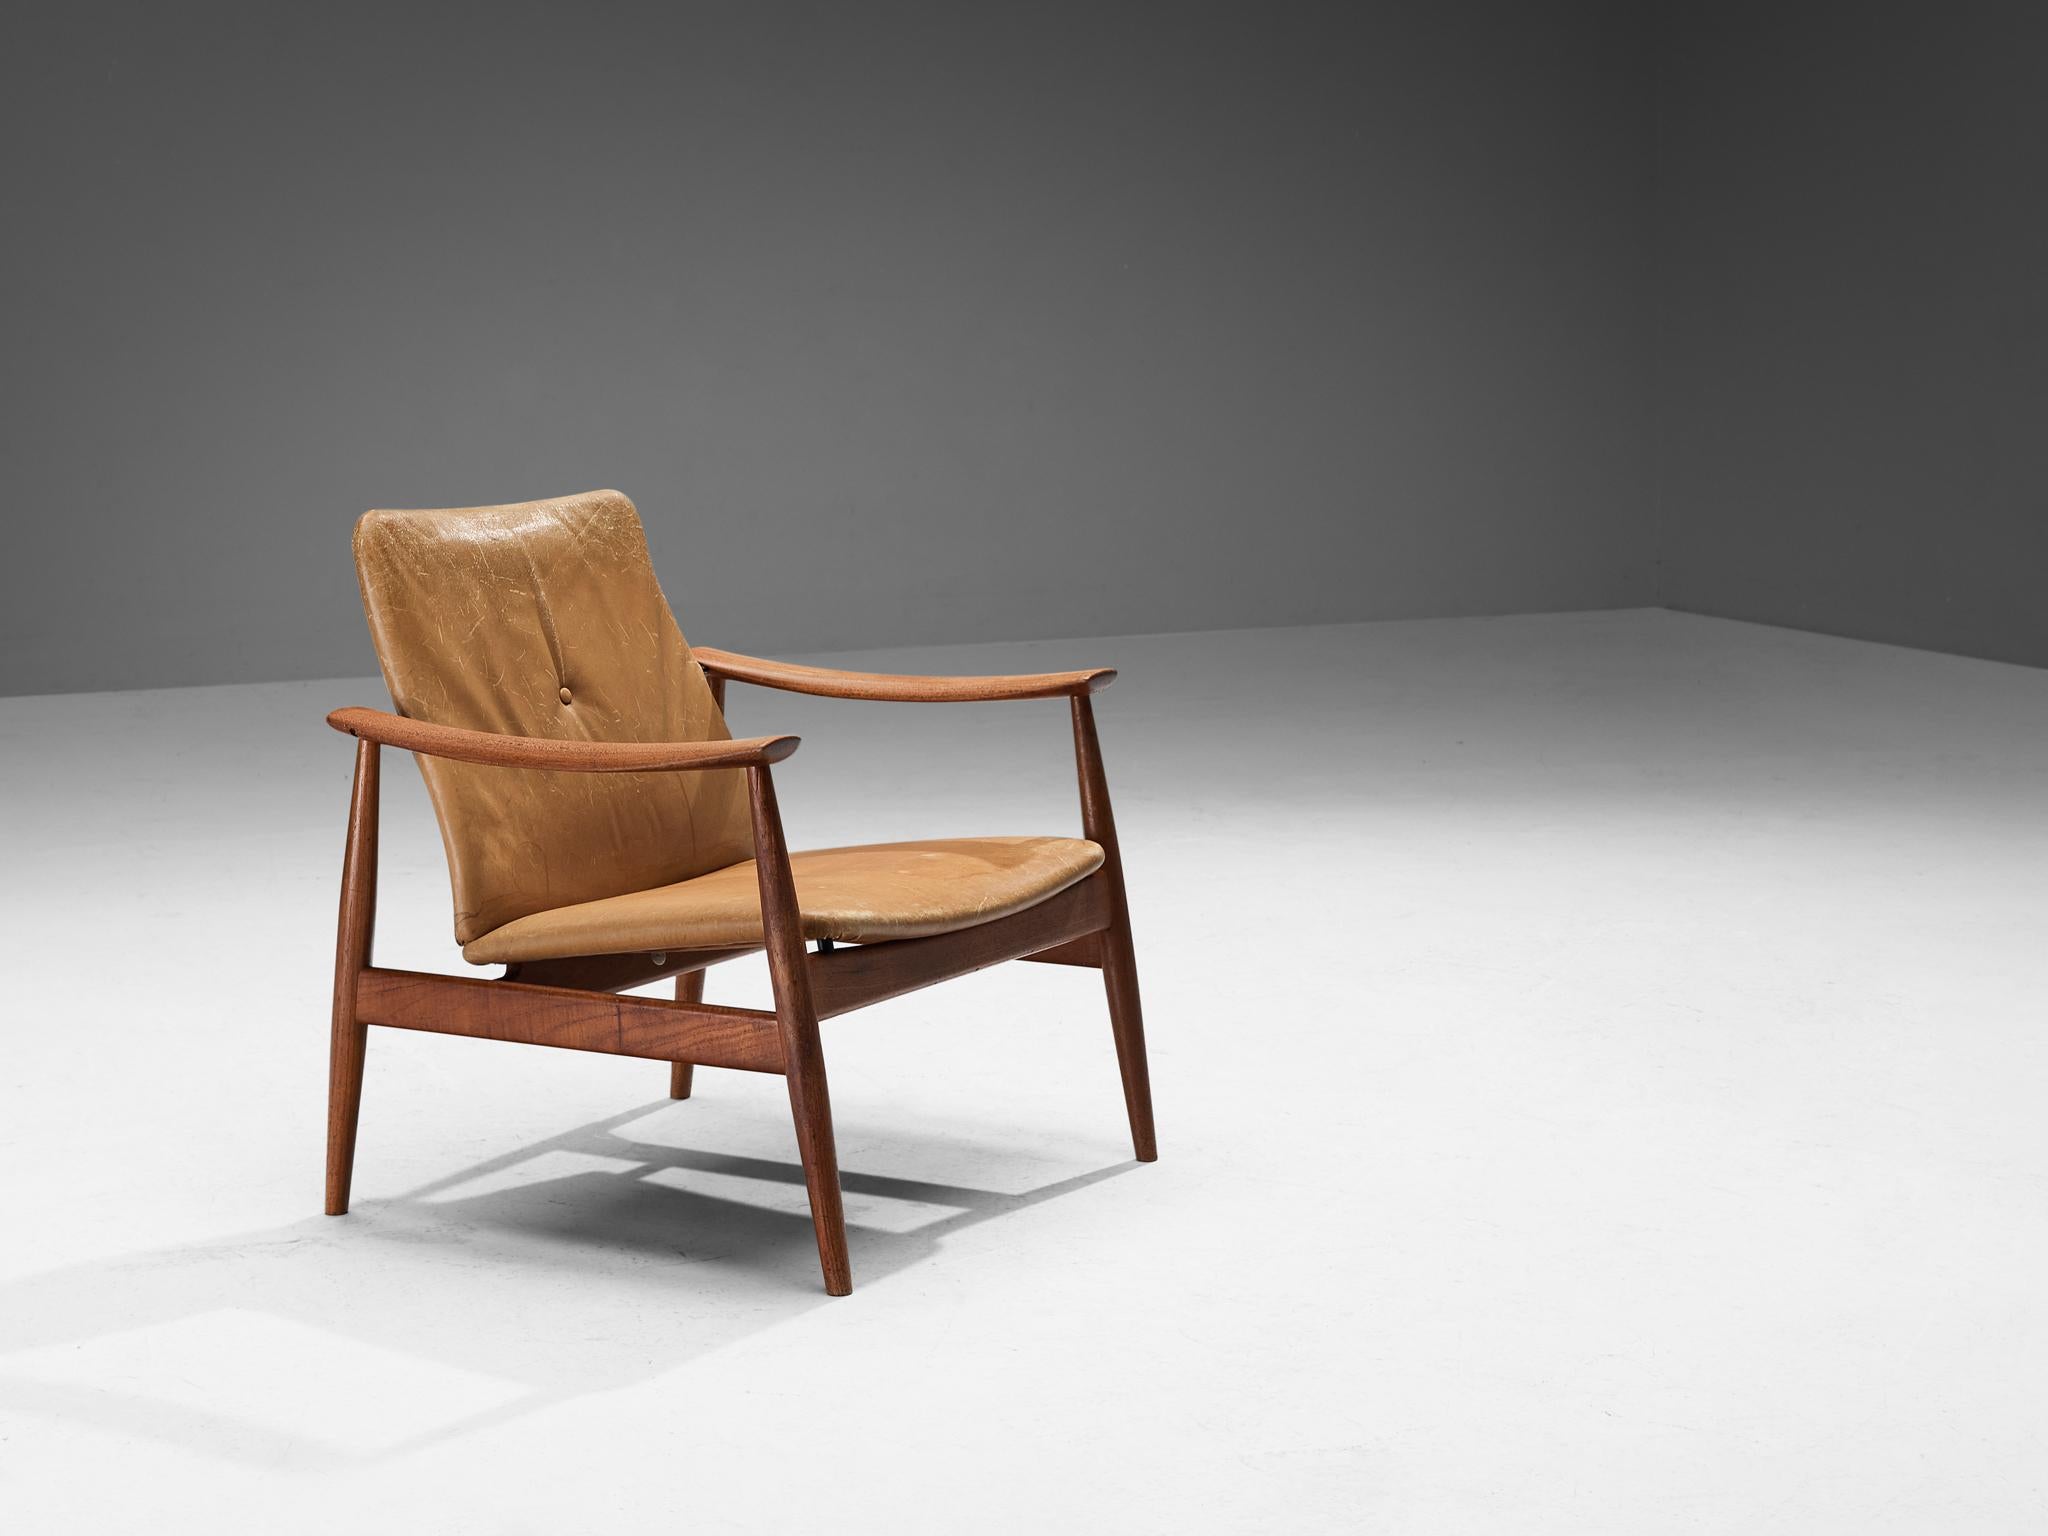 Finn Juhls pour France & Søn, no. 138 chaise longue, teck, cuir, Danemark, design ca. 1959

Cette chaise facile a été conçue par le maître designer danois Finn Juhls en 1959. Défini par un cadre organique élégant en teck magnifique, ses pieds